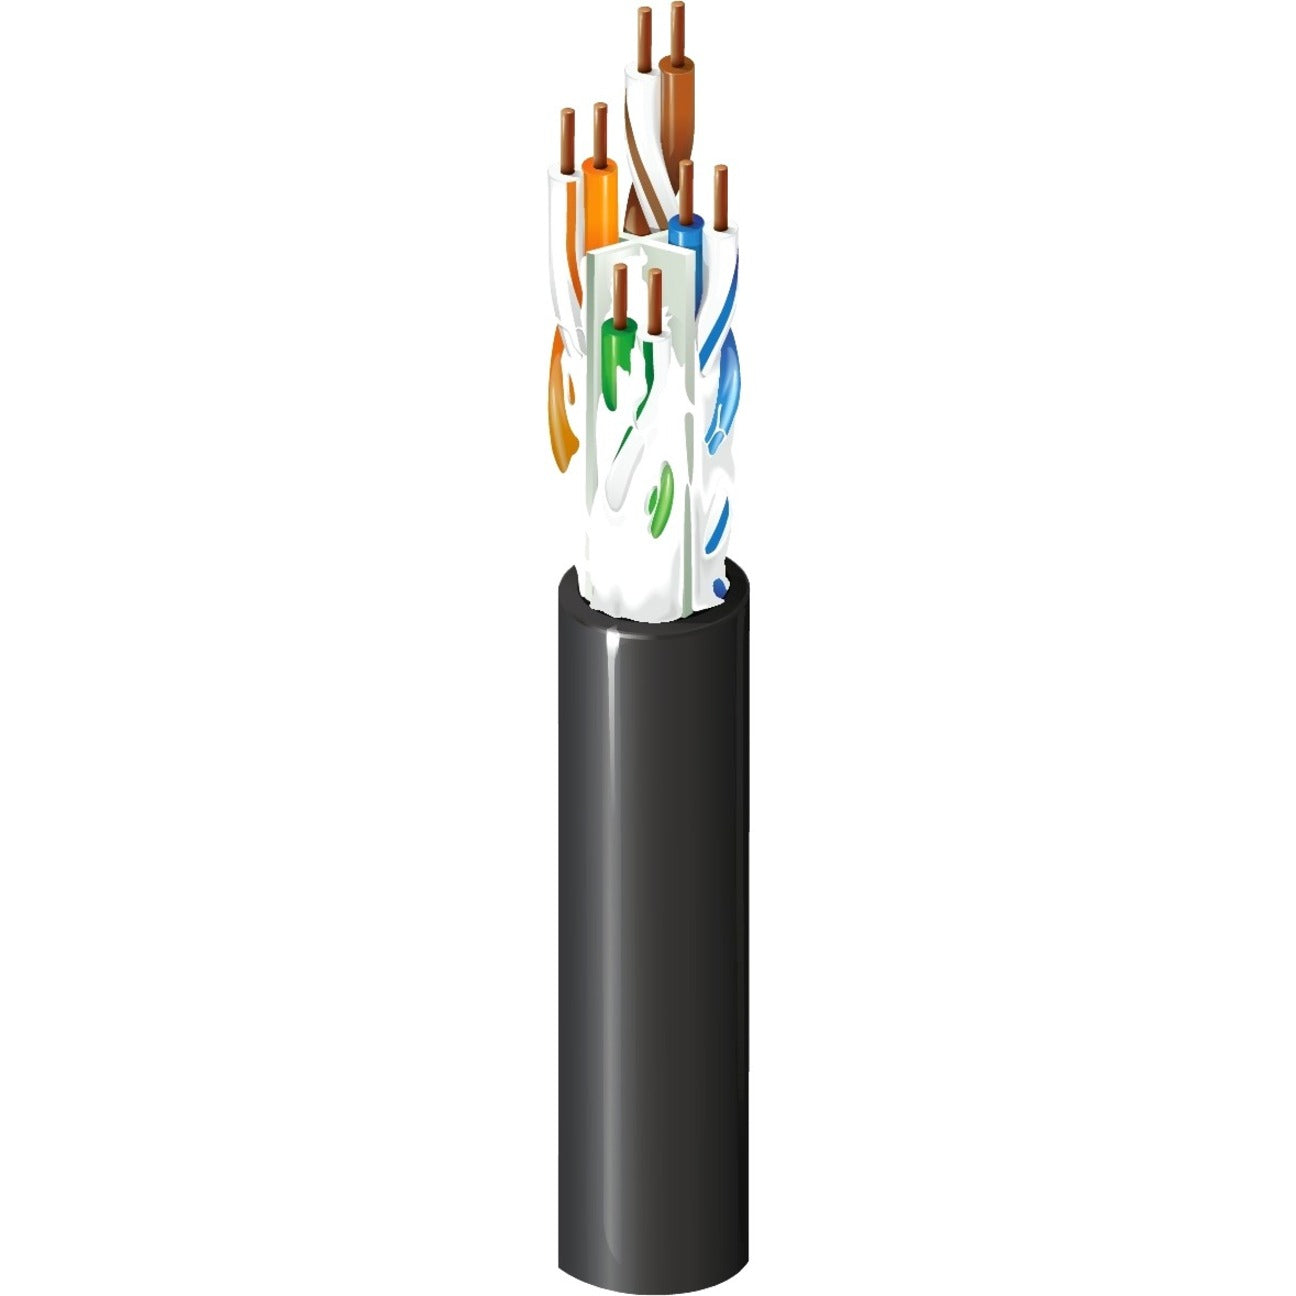 Belden OSP6U0101000 Category 6 OSP Cable, Gel Filled, 4 Pair, U/UTP, 1000 ft